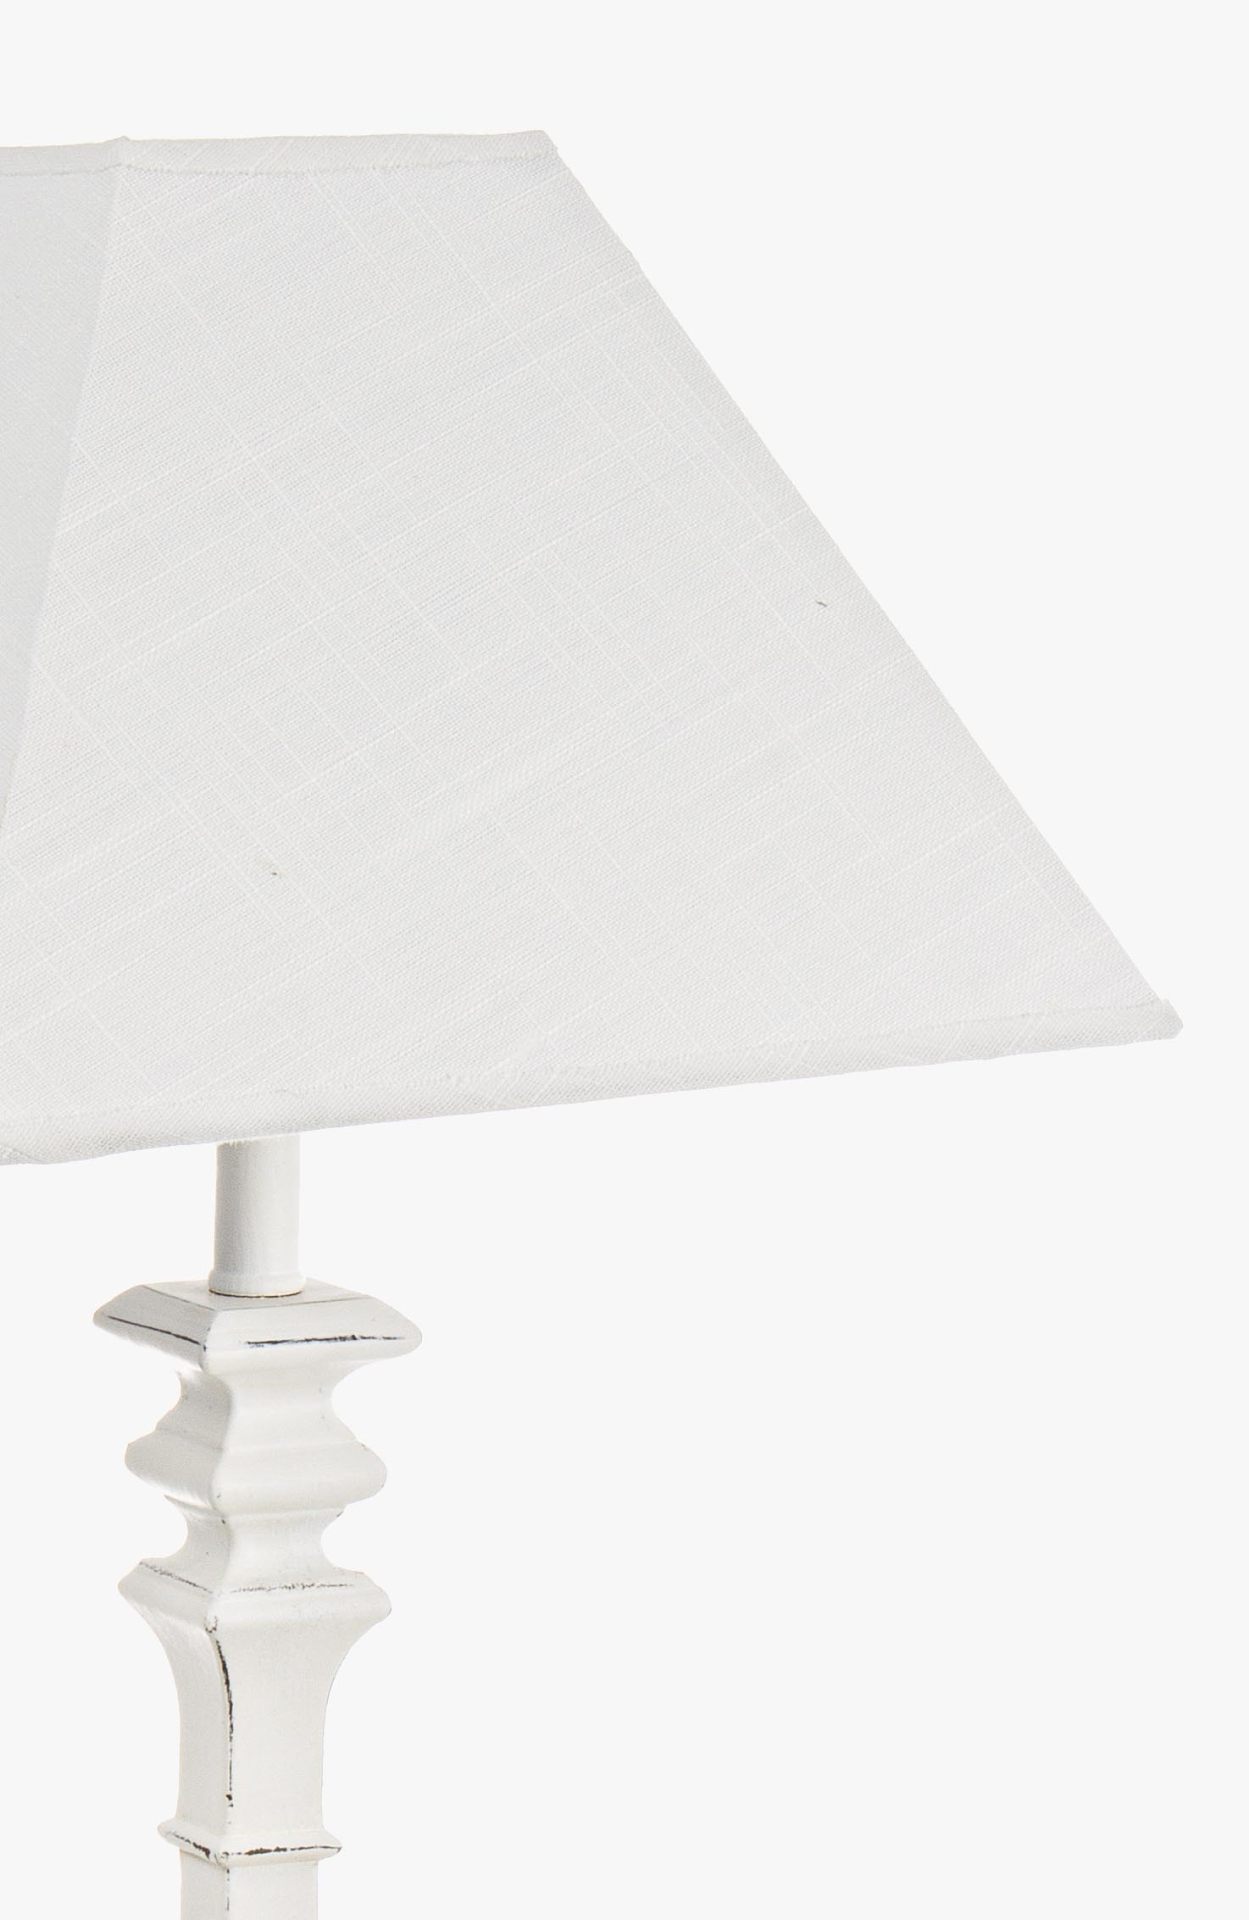 Die Tischleuchte Ajaccio überzeugt mit ihrem klassischen Design. Gefertigt wurde sie aus MDF, welches einen weißen Farbton besitzt. Der Lampenschirm ist aus Baumwolle und hat eine weiße Farbe. Die Lampe besitzt eine Höhe von 52 cm.